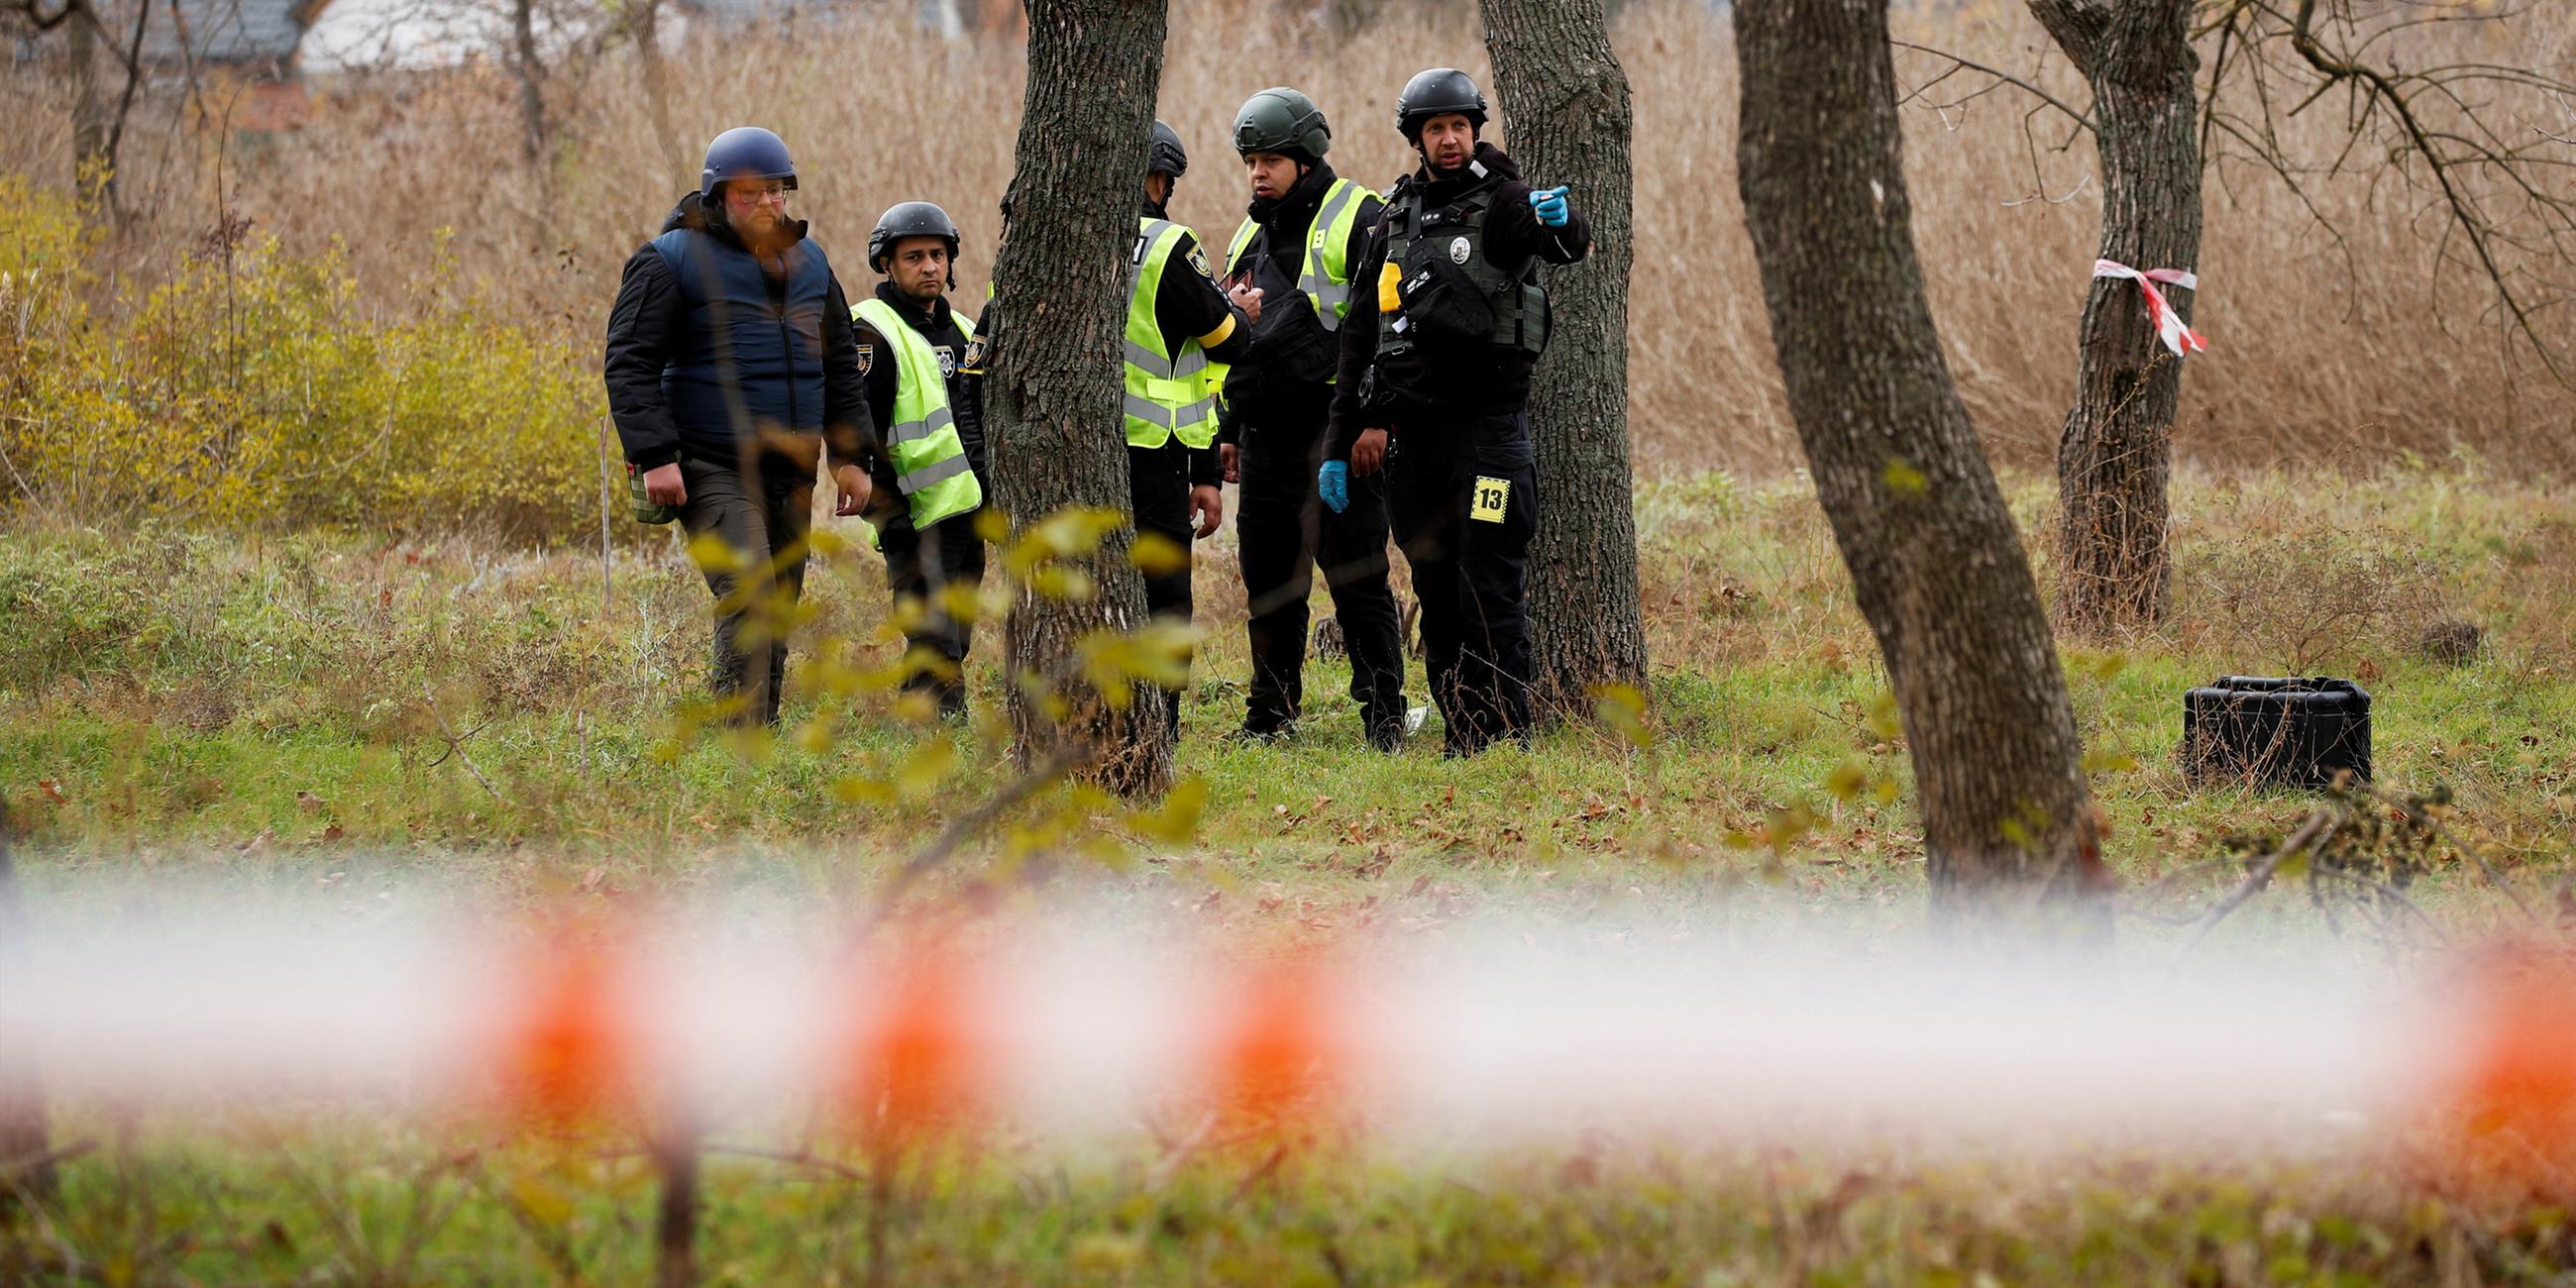 Forensiker der ukrainischen Polizei suchen nach Beweisen in einem Park, in dem zu Beginn des Krieges Kämpfe zwischen ukrainischen Territorialstreitkräften und russischen Streitkräften stattfanden, in Cherson, Ukraine. Aufgenommen am 16. 11. 2022.